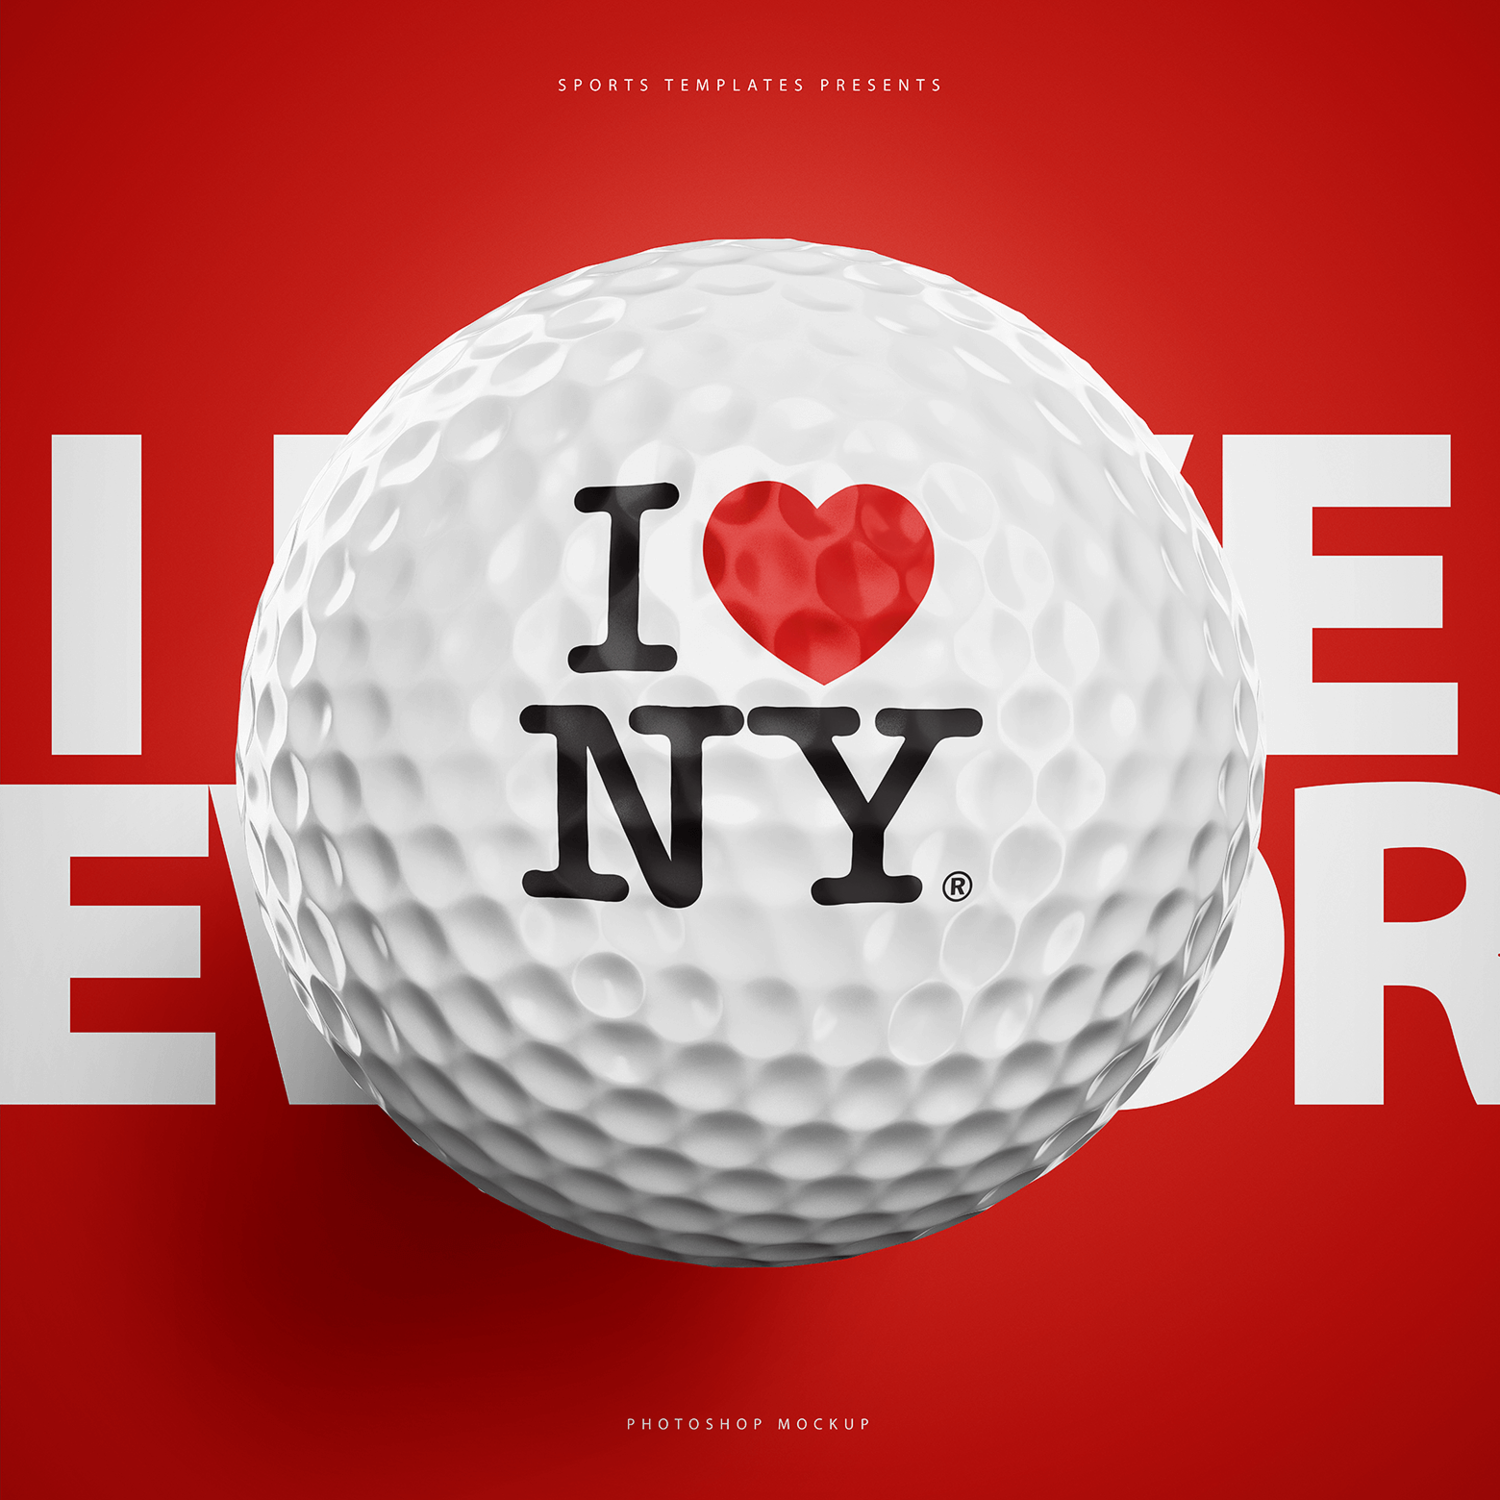 3140 逼真高尔夫球PSD样机素材 Golf Ball Photoshop Template – Sports Templates